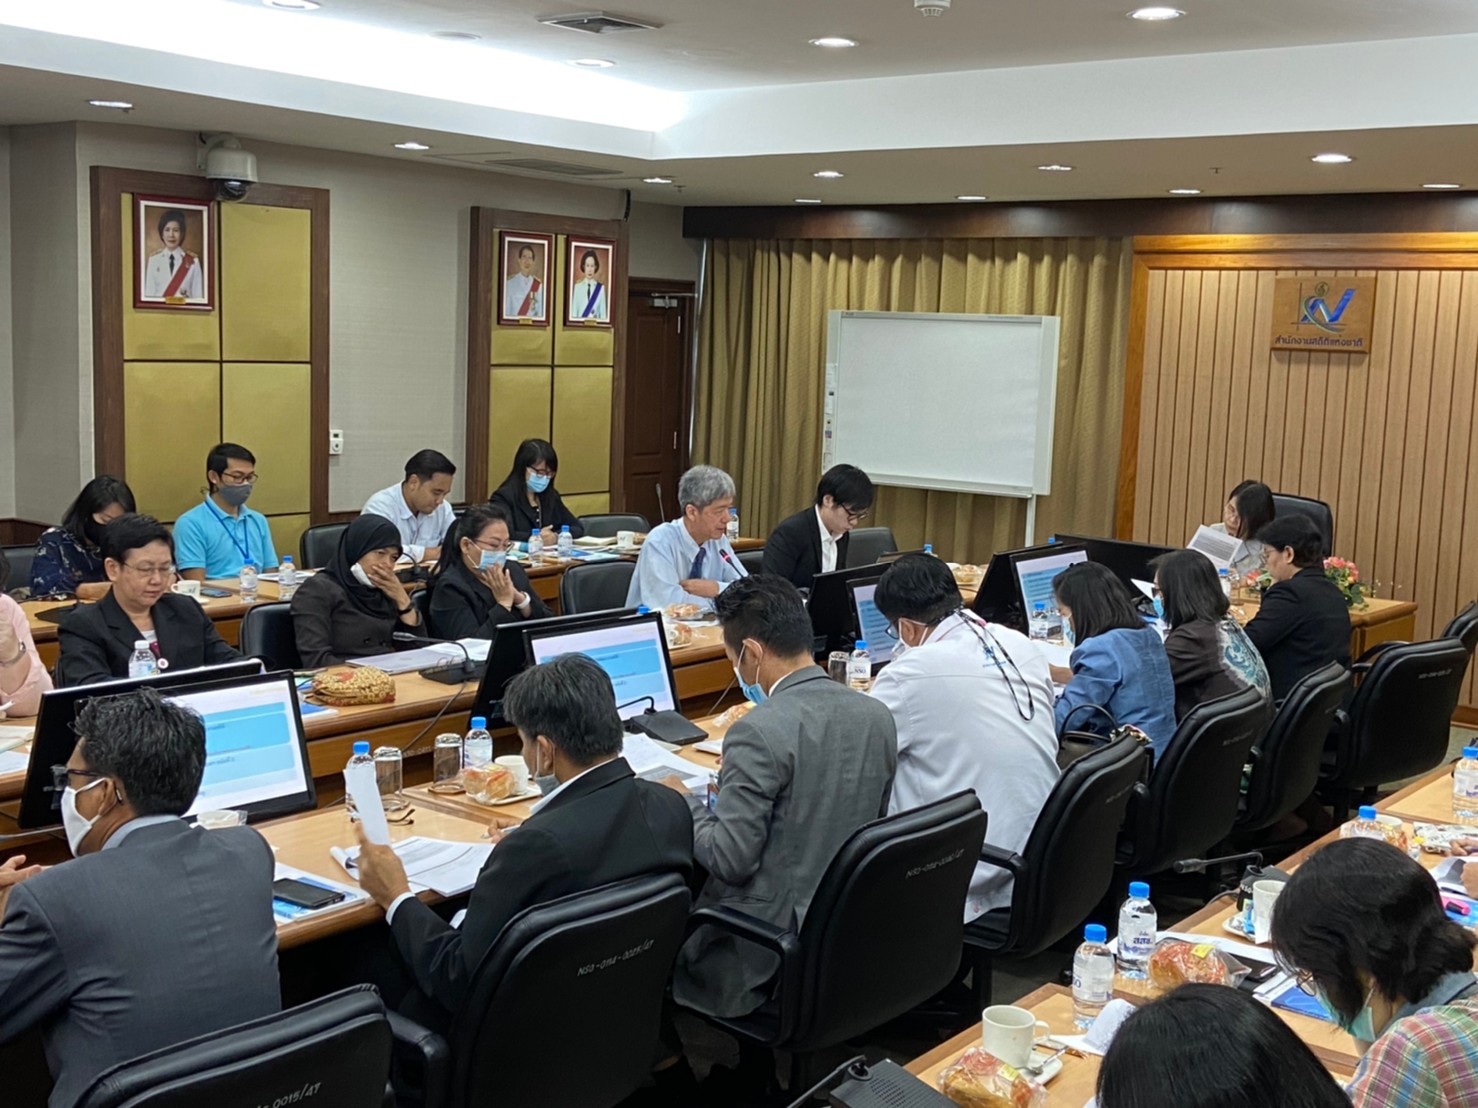  ประชุม การปรับปรุงแผนแม่บทระบบสถิติประเทศไทย